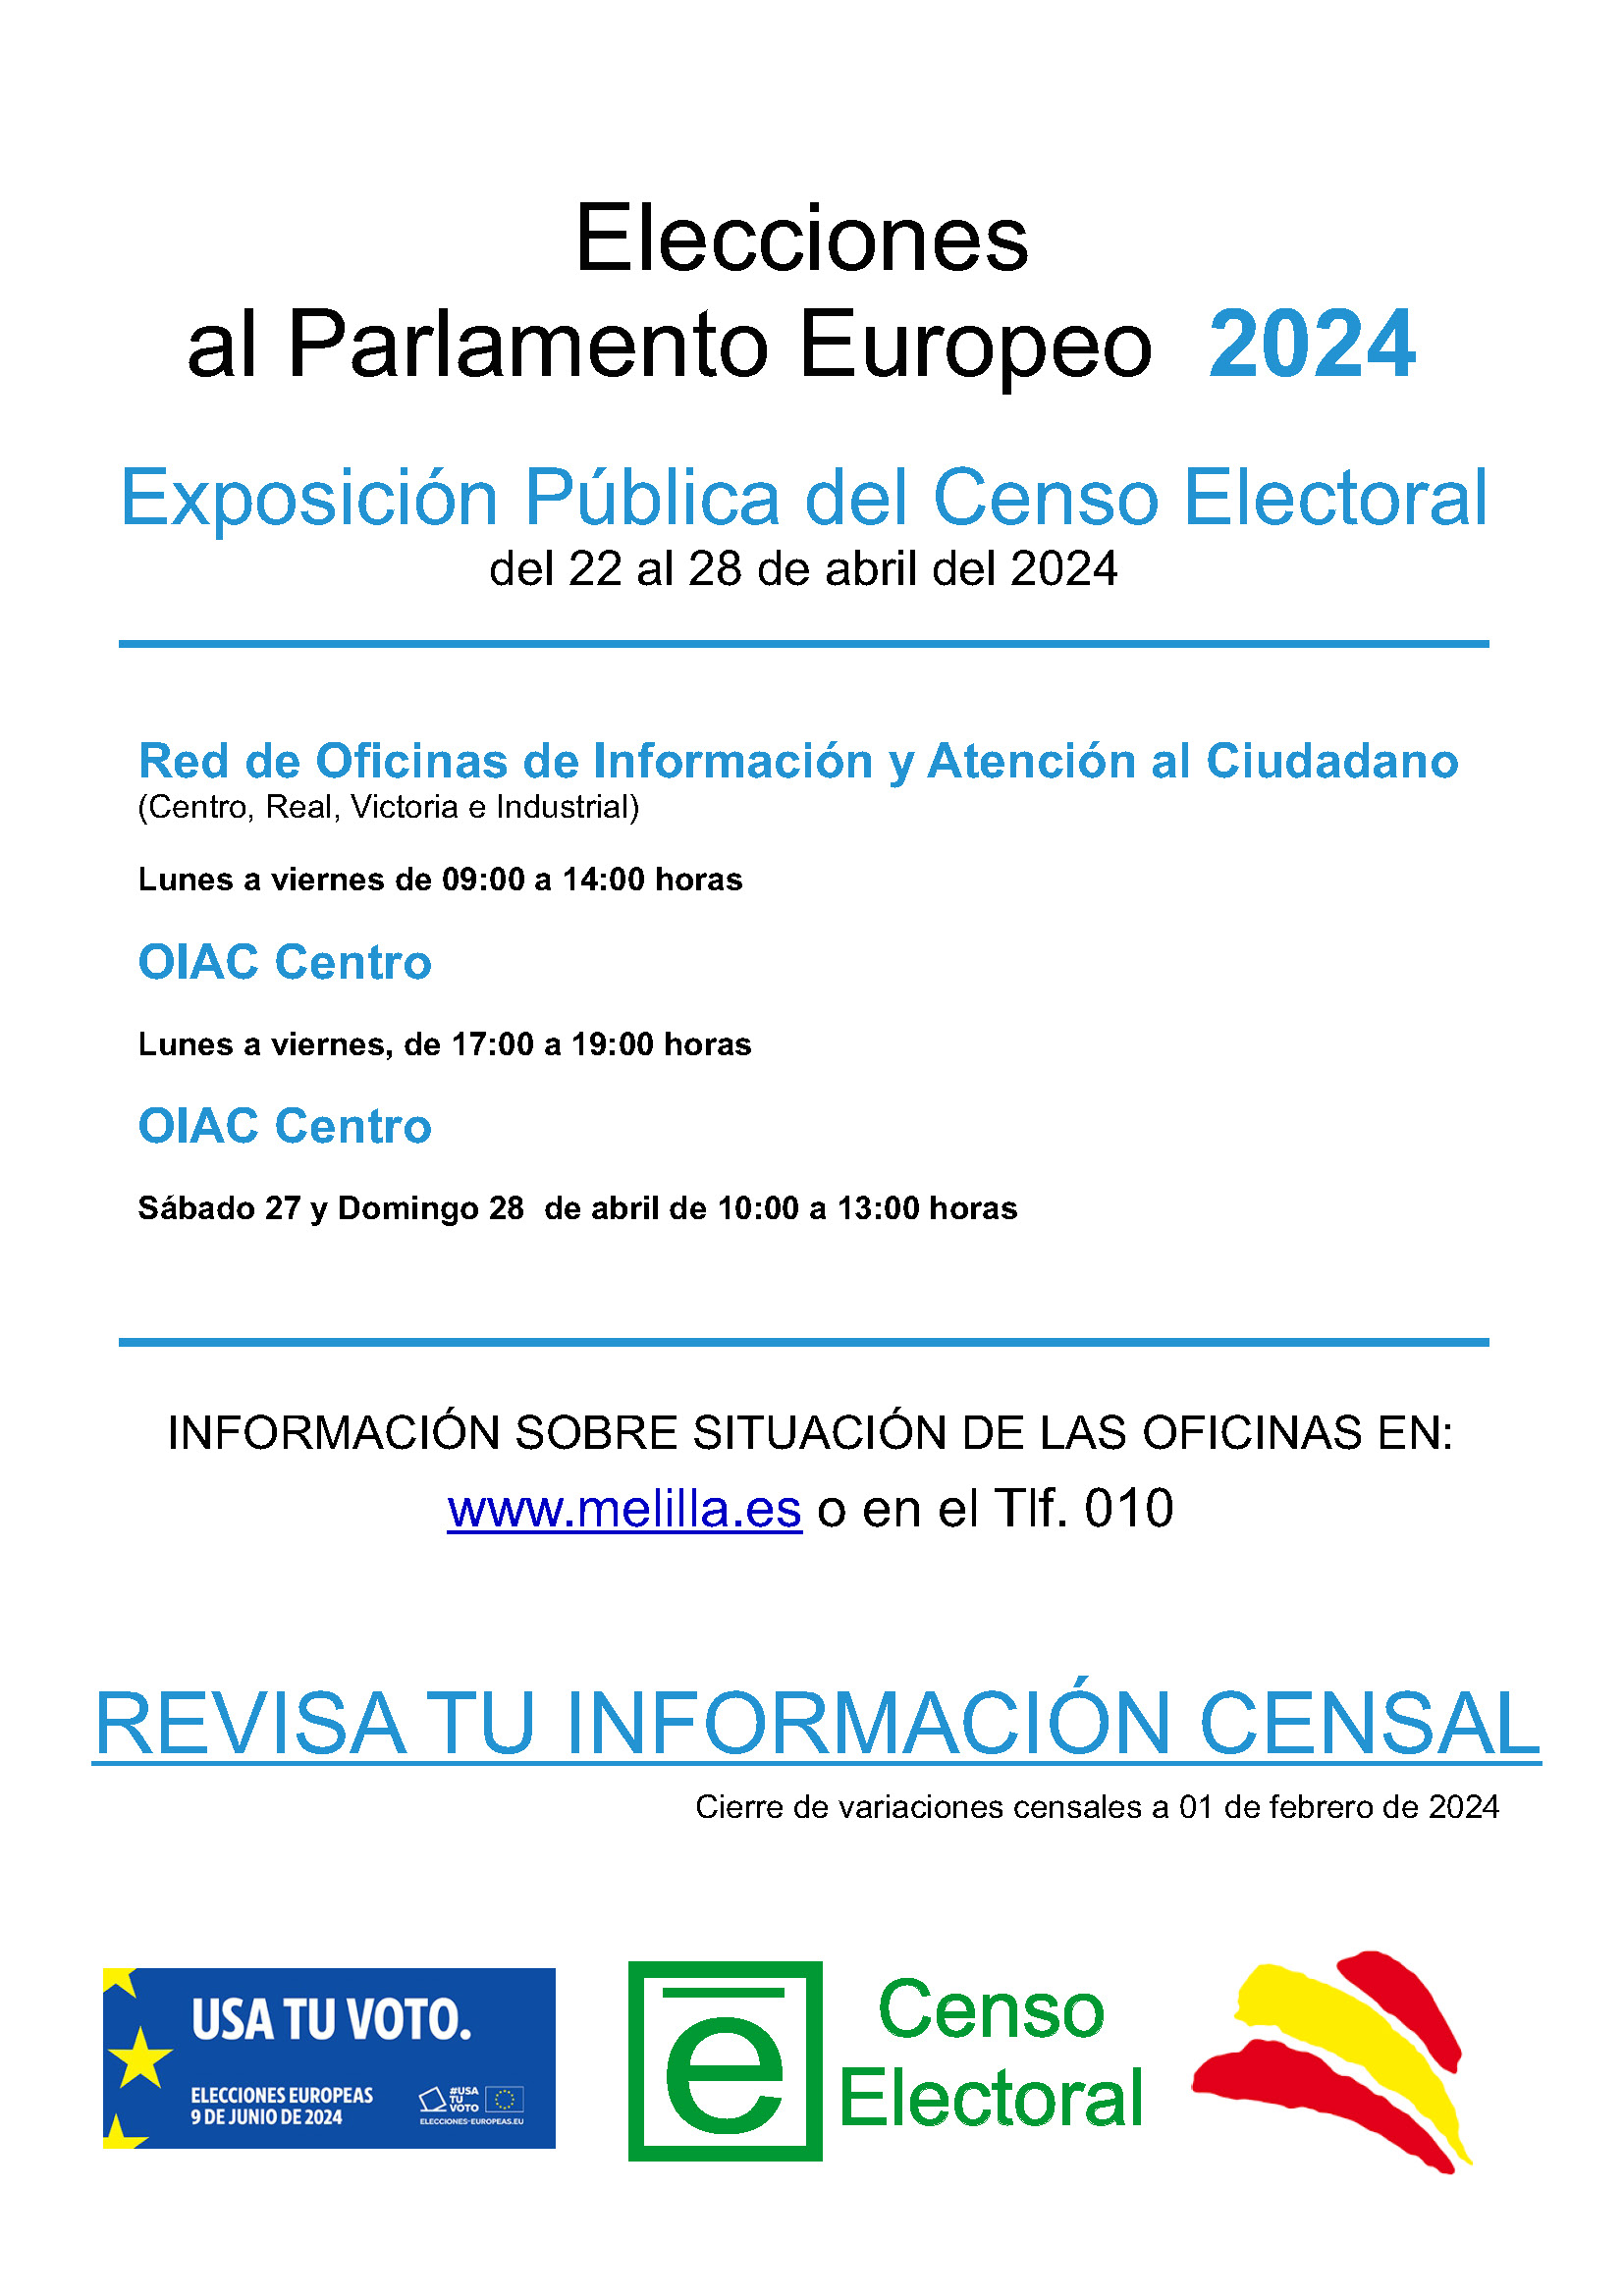 EXPOSICIN PBLICA DEL CENSO ELECTORAL - ELECCIONES AL PARLAMENTO EUROPEO 2024